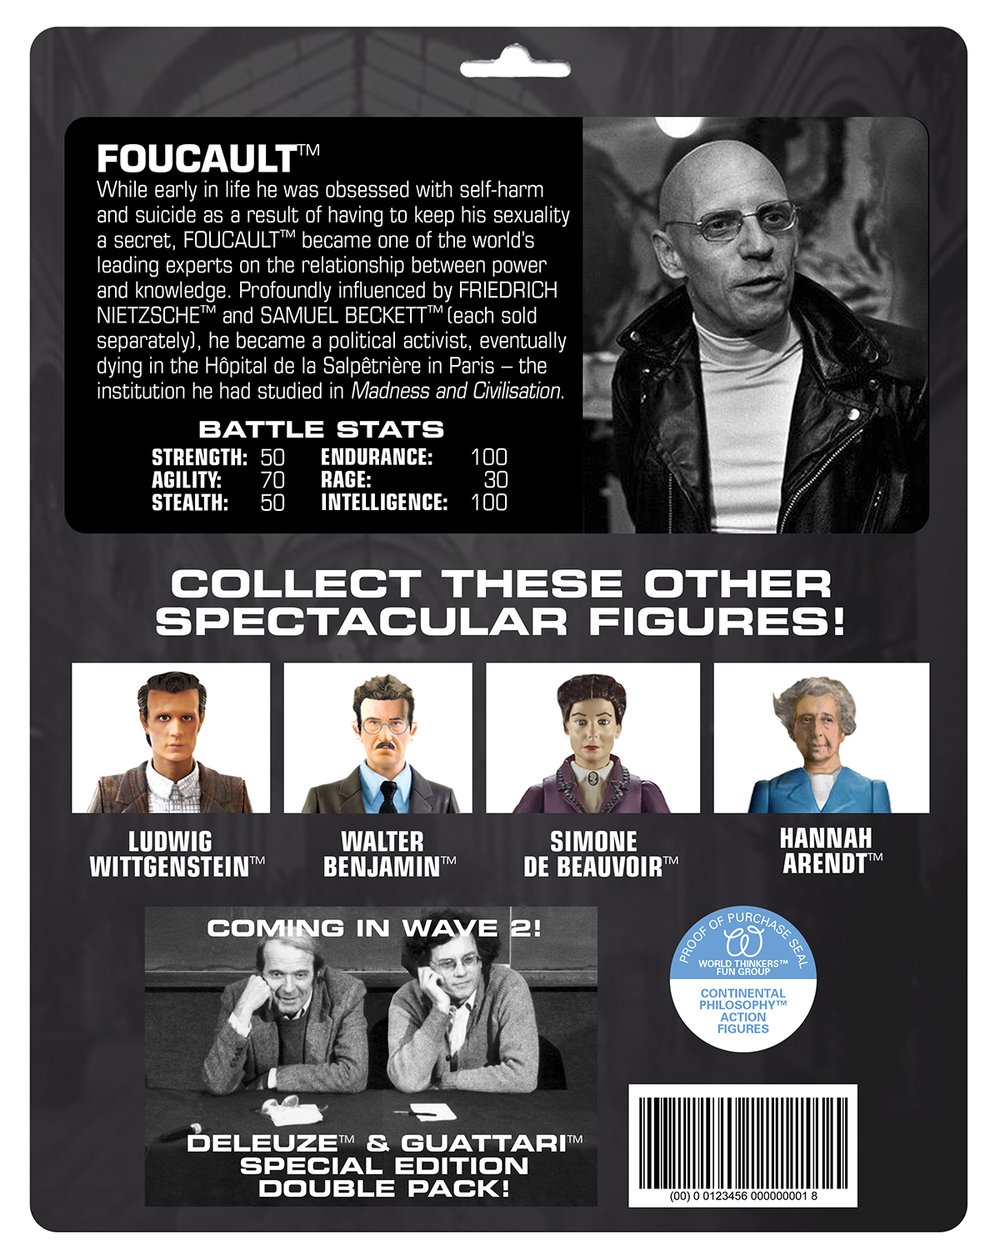 Foucault-2.jpg